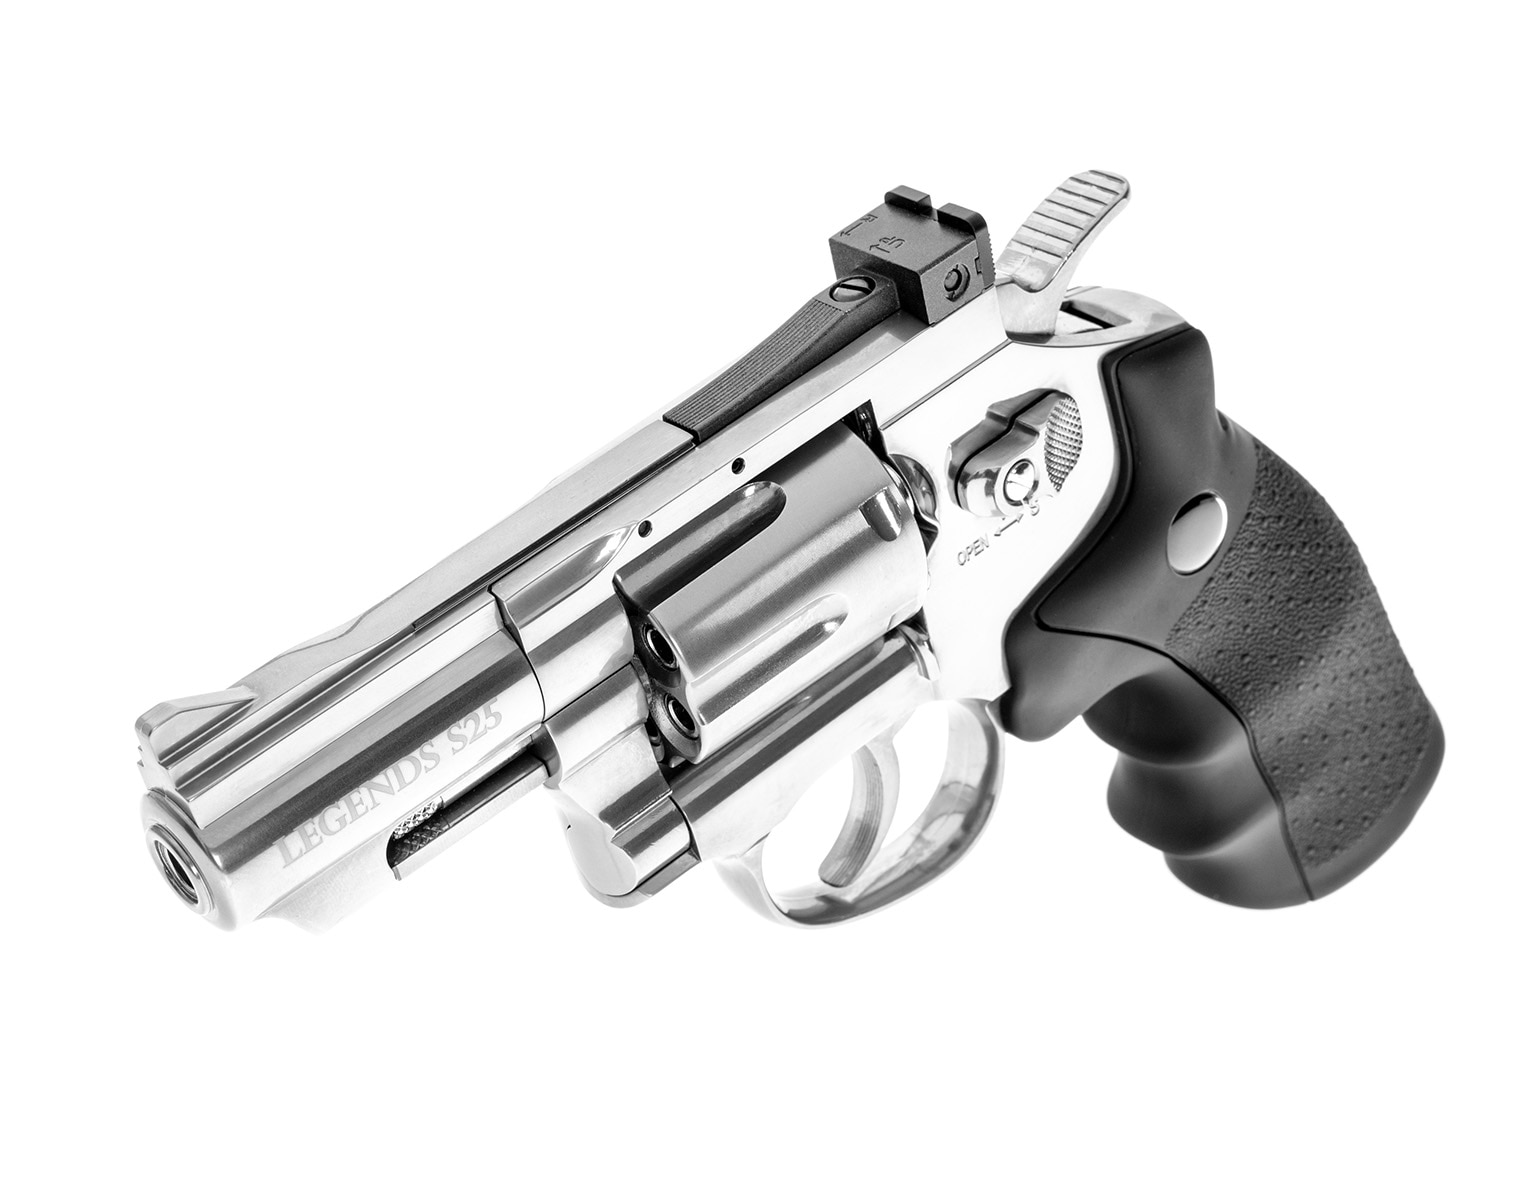 Револьвер Umarex Legends S25 4,5 мм